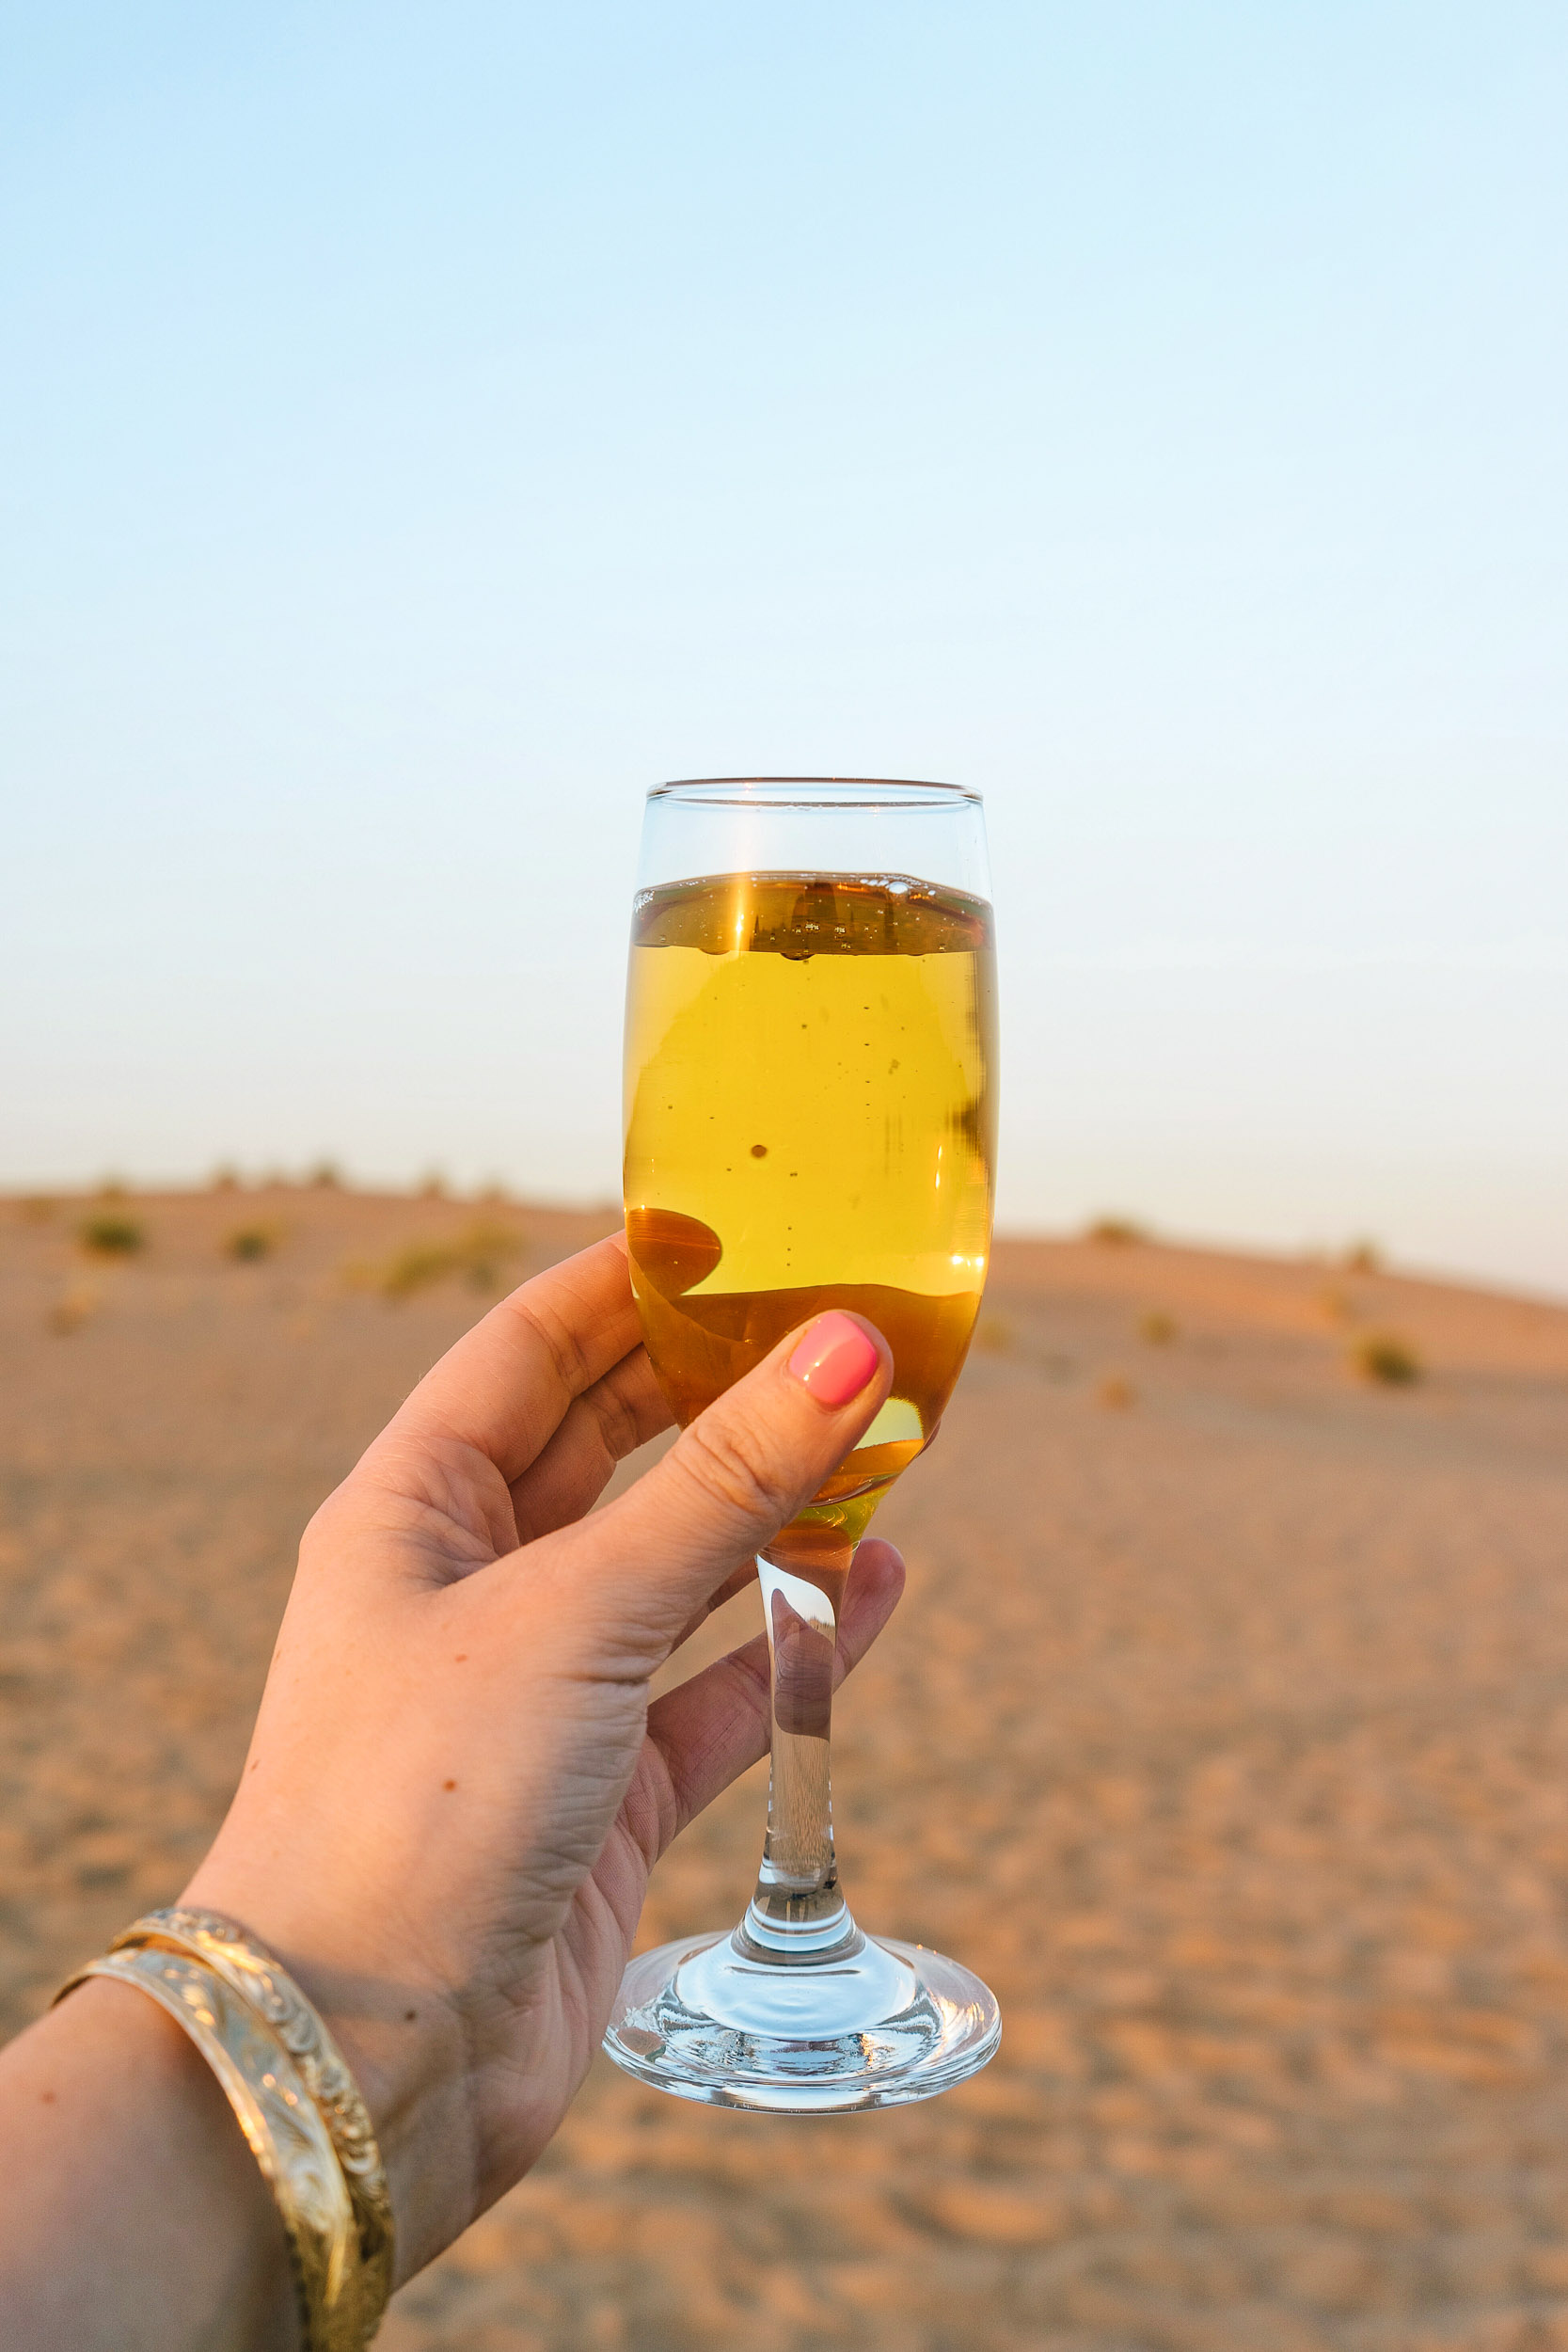 Cheers to a fun desert safari in Dubai!